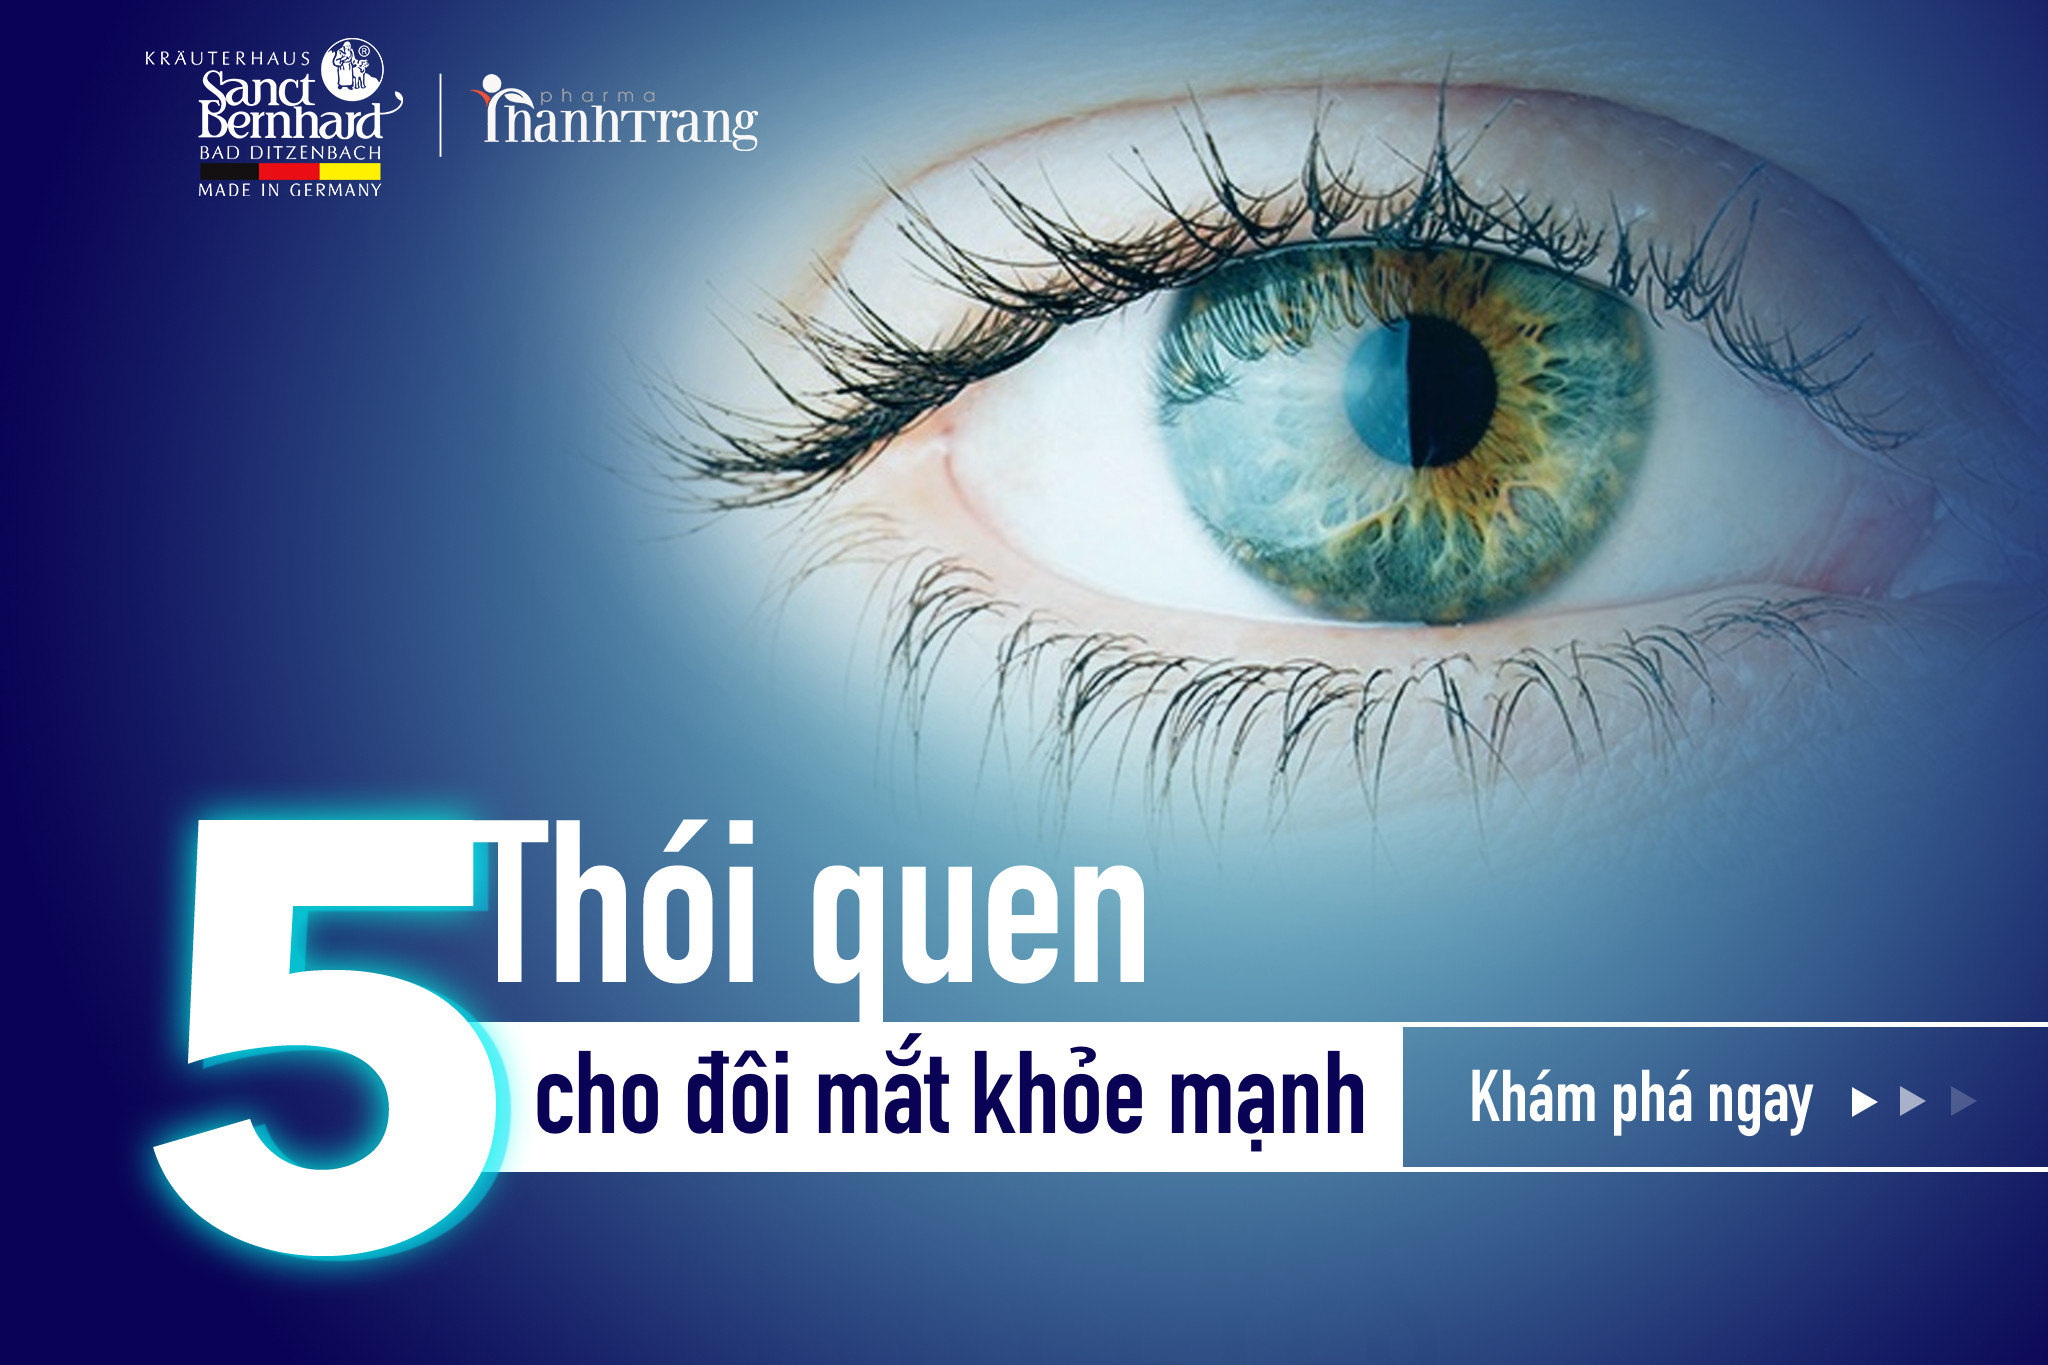 5 bí quyết giúp cải thiện tình trạng nhức mắt, mỏi mắt